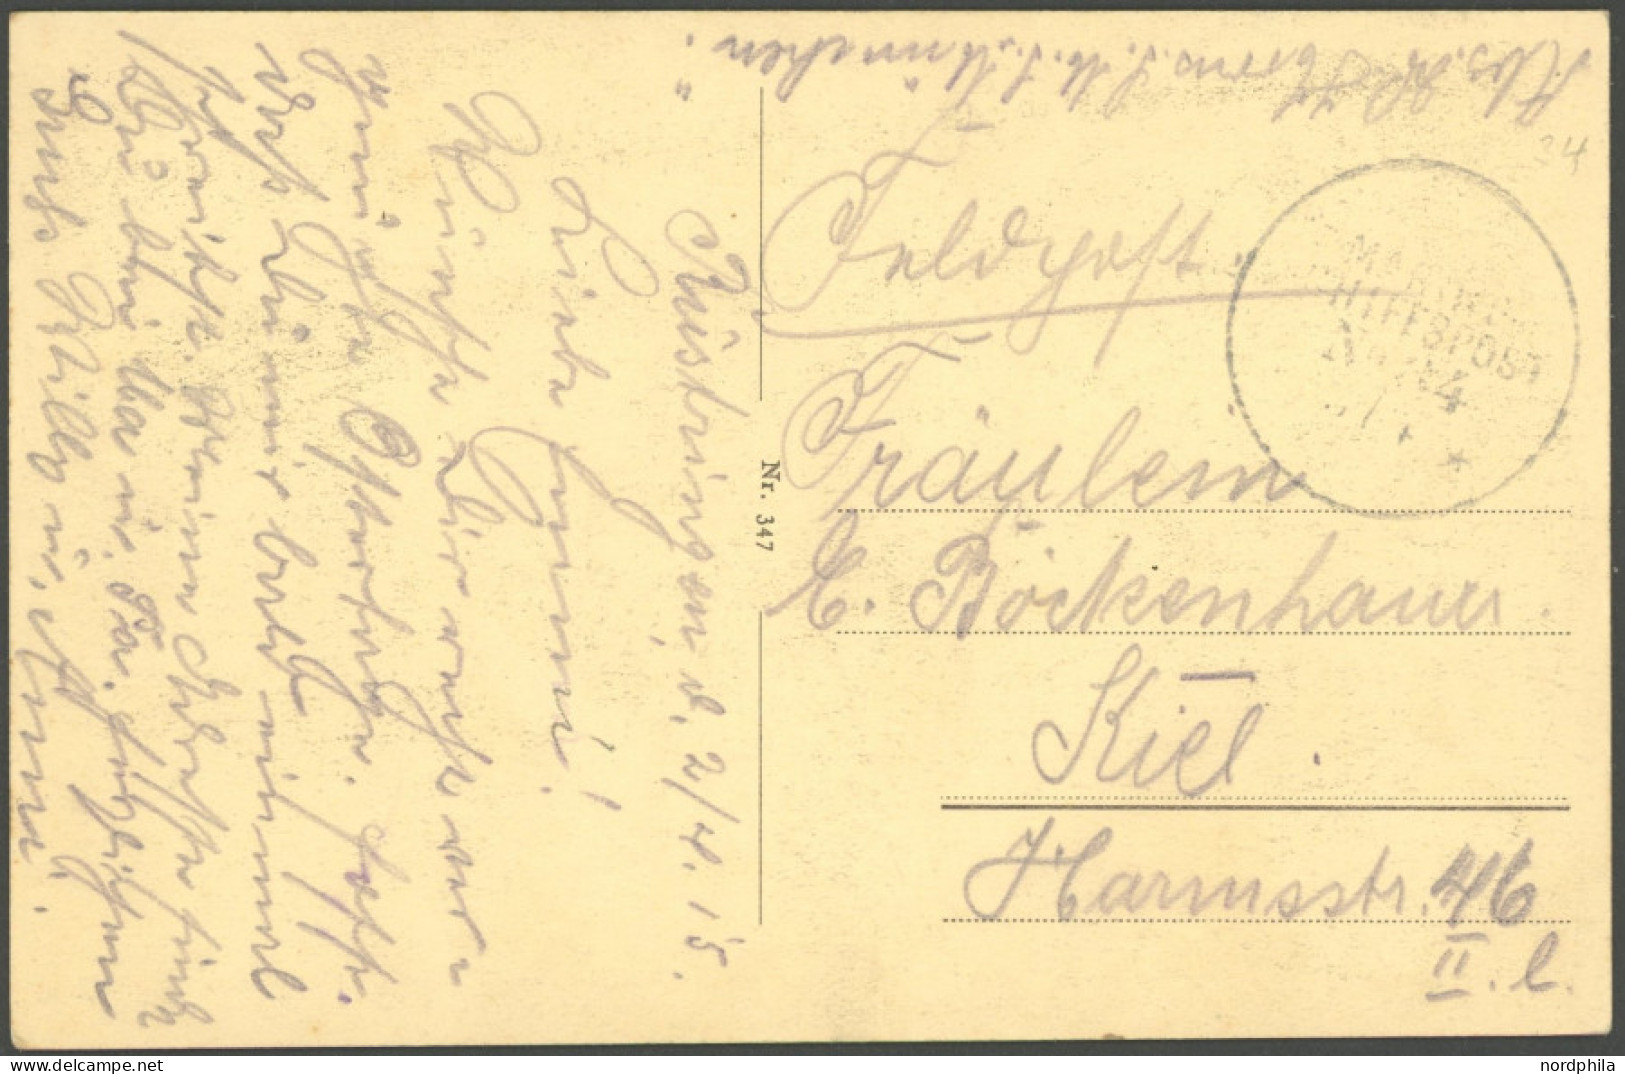 MSP VON 1914 - 1918 34 (S.M.S. MÜNCHEN), 2.4.15, FP-Ansichtskarte, Pracht - Maritime